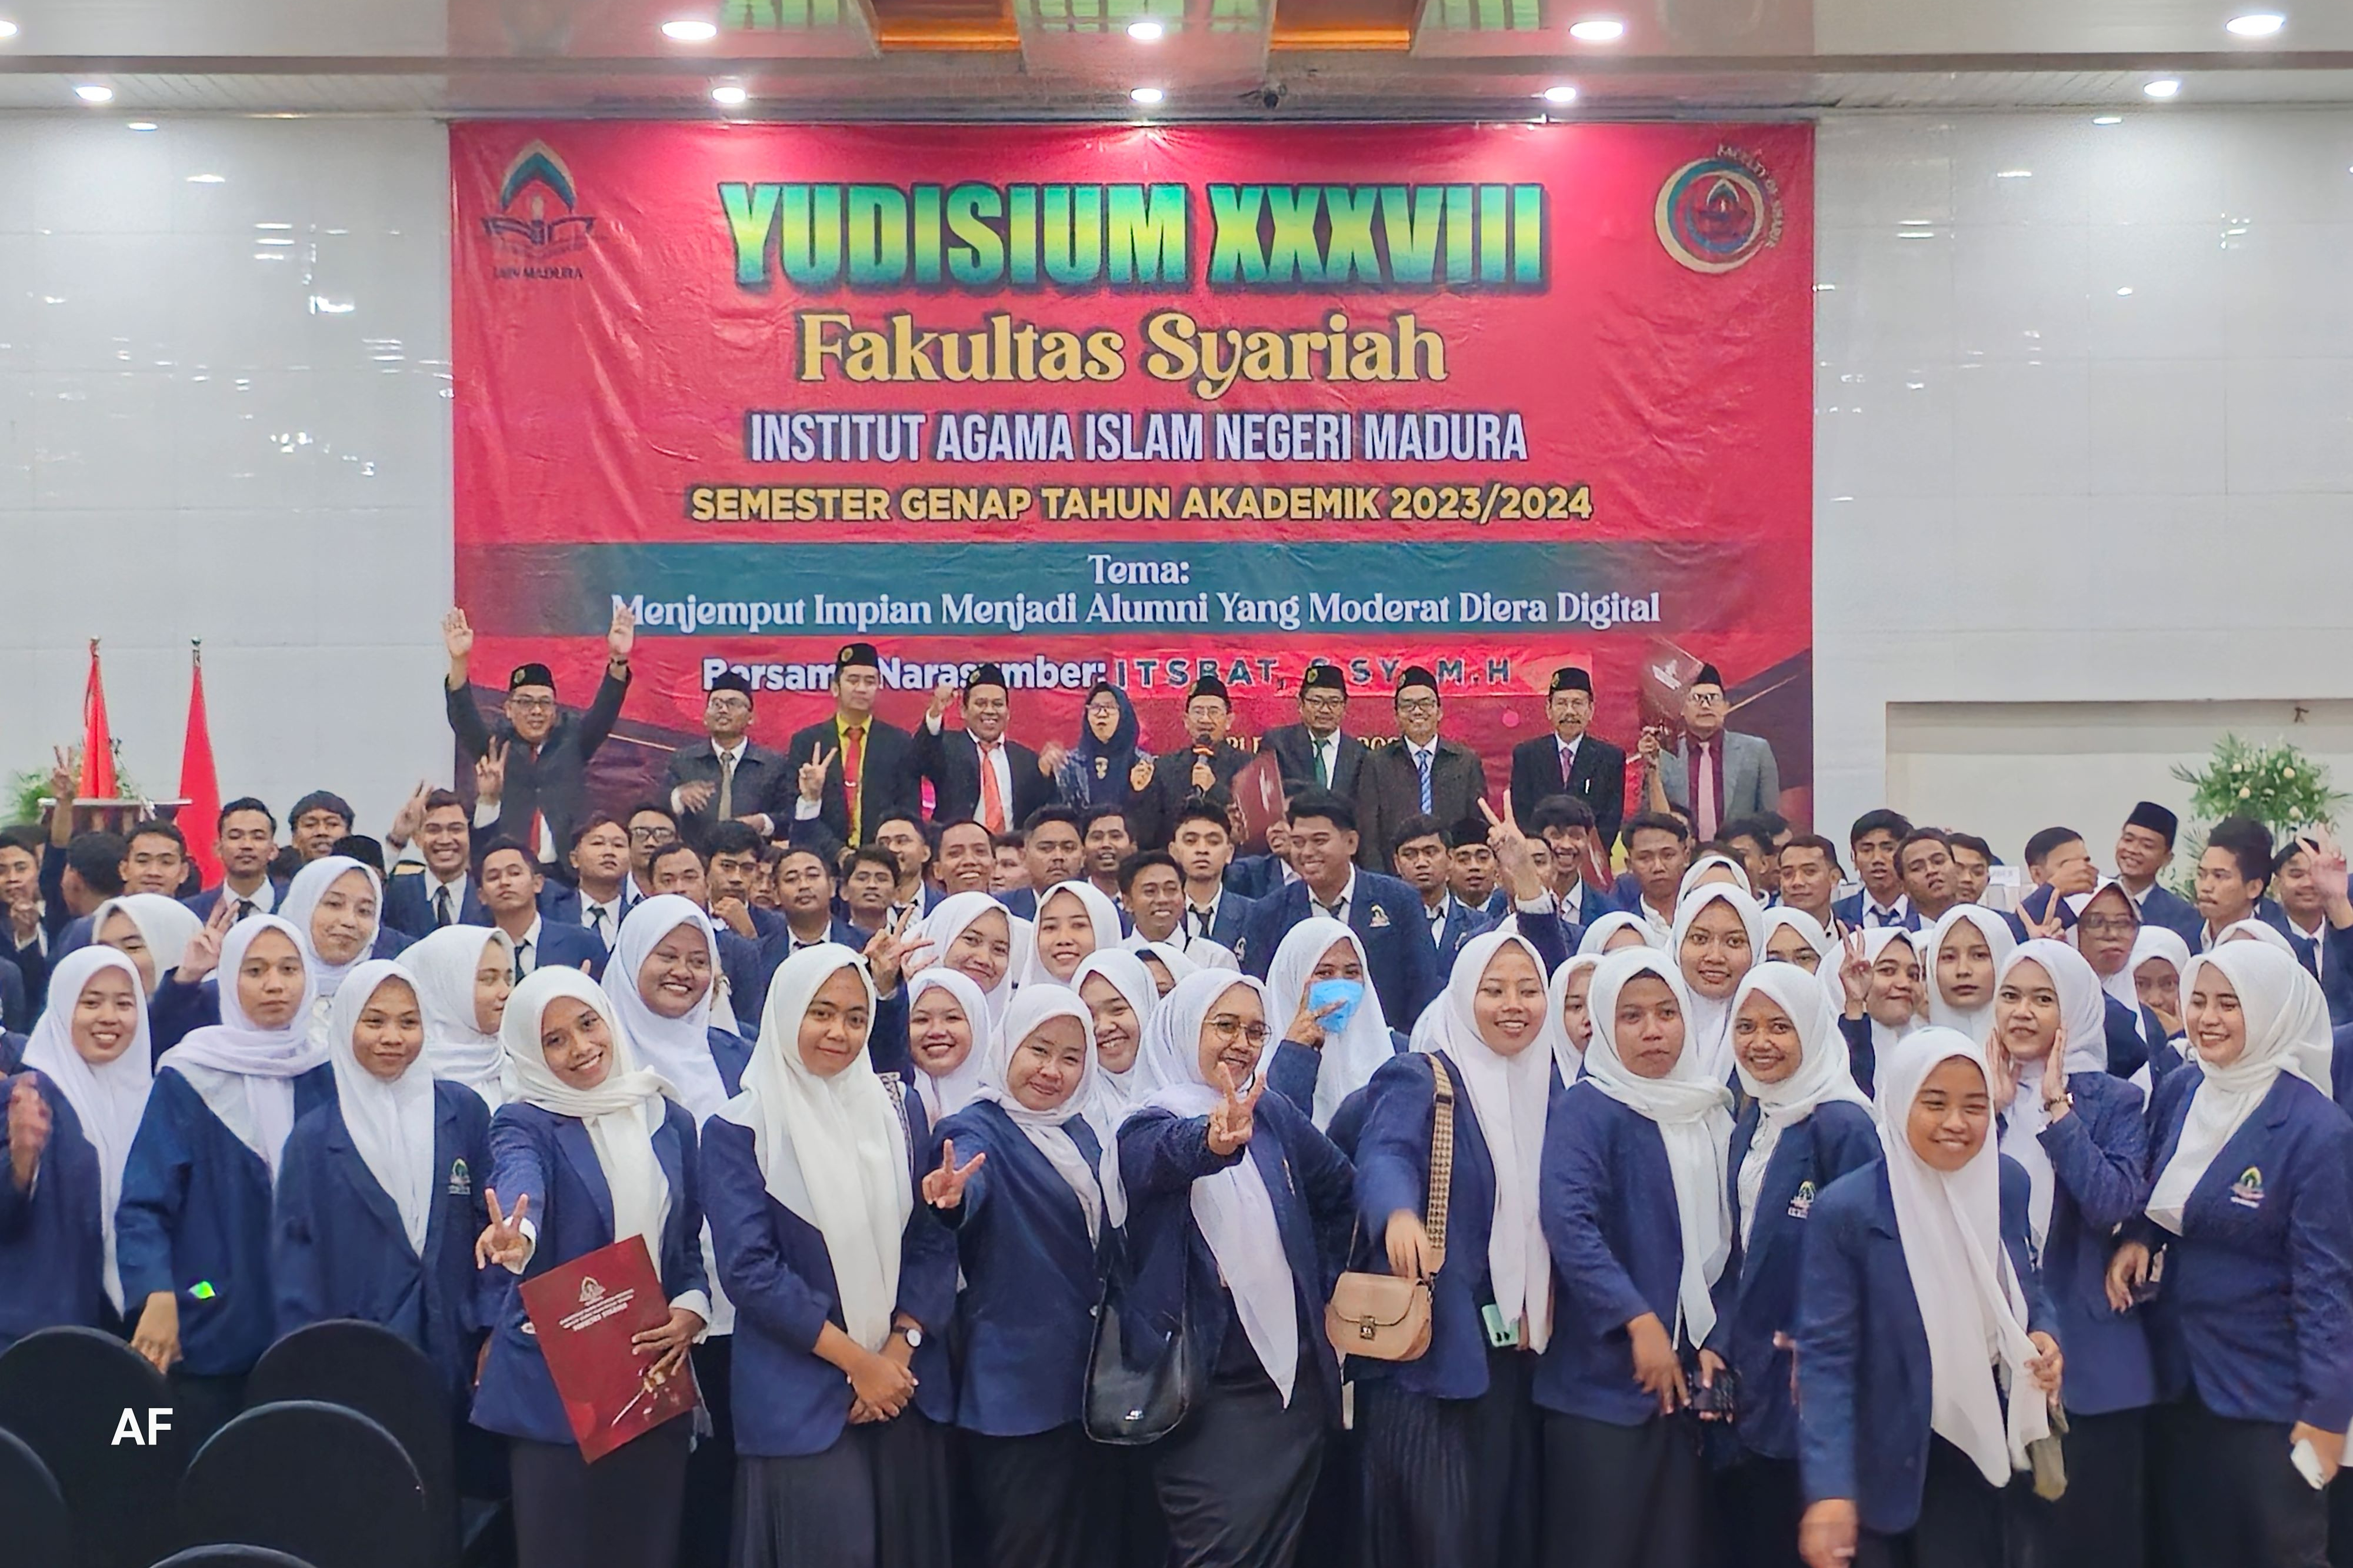 Yudisium XXXVIII Fakultas Syariah: Menjemput Impian menjadi Alumni yang Moderat di Era Digital